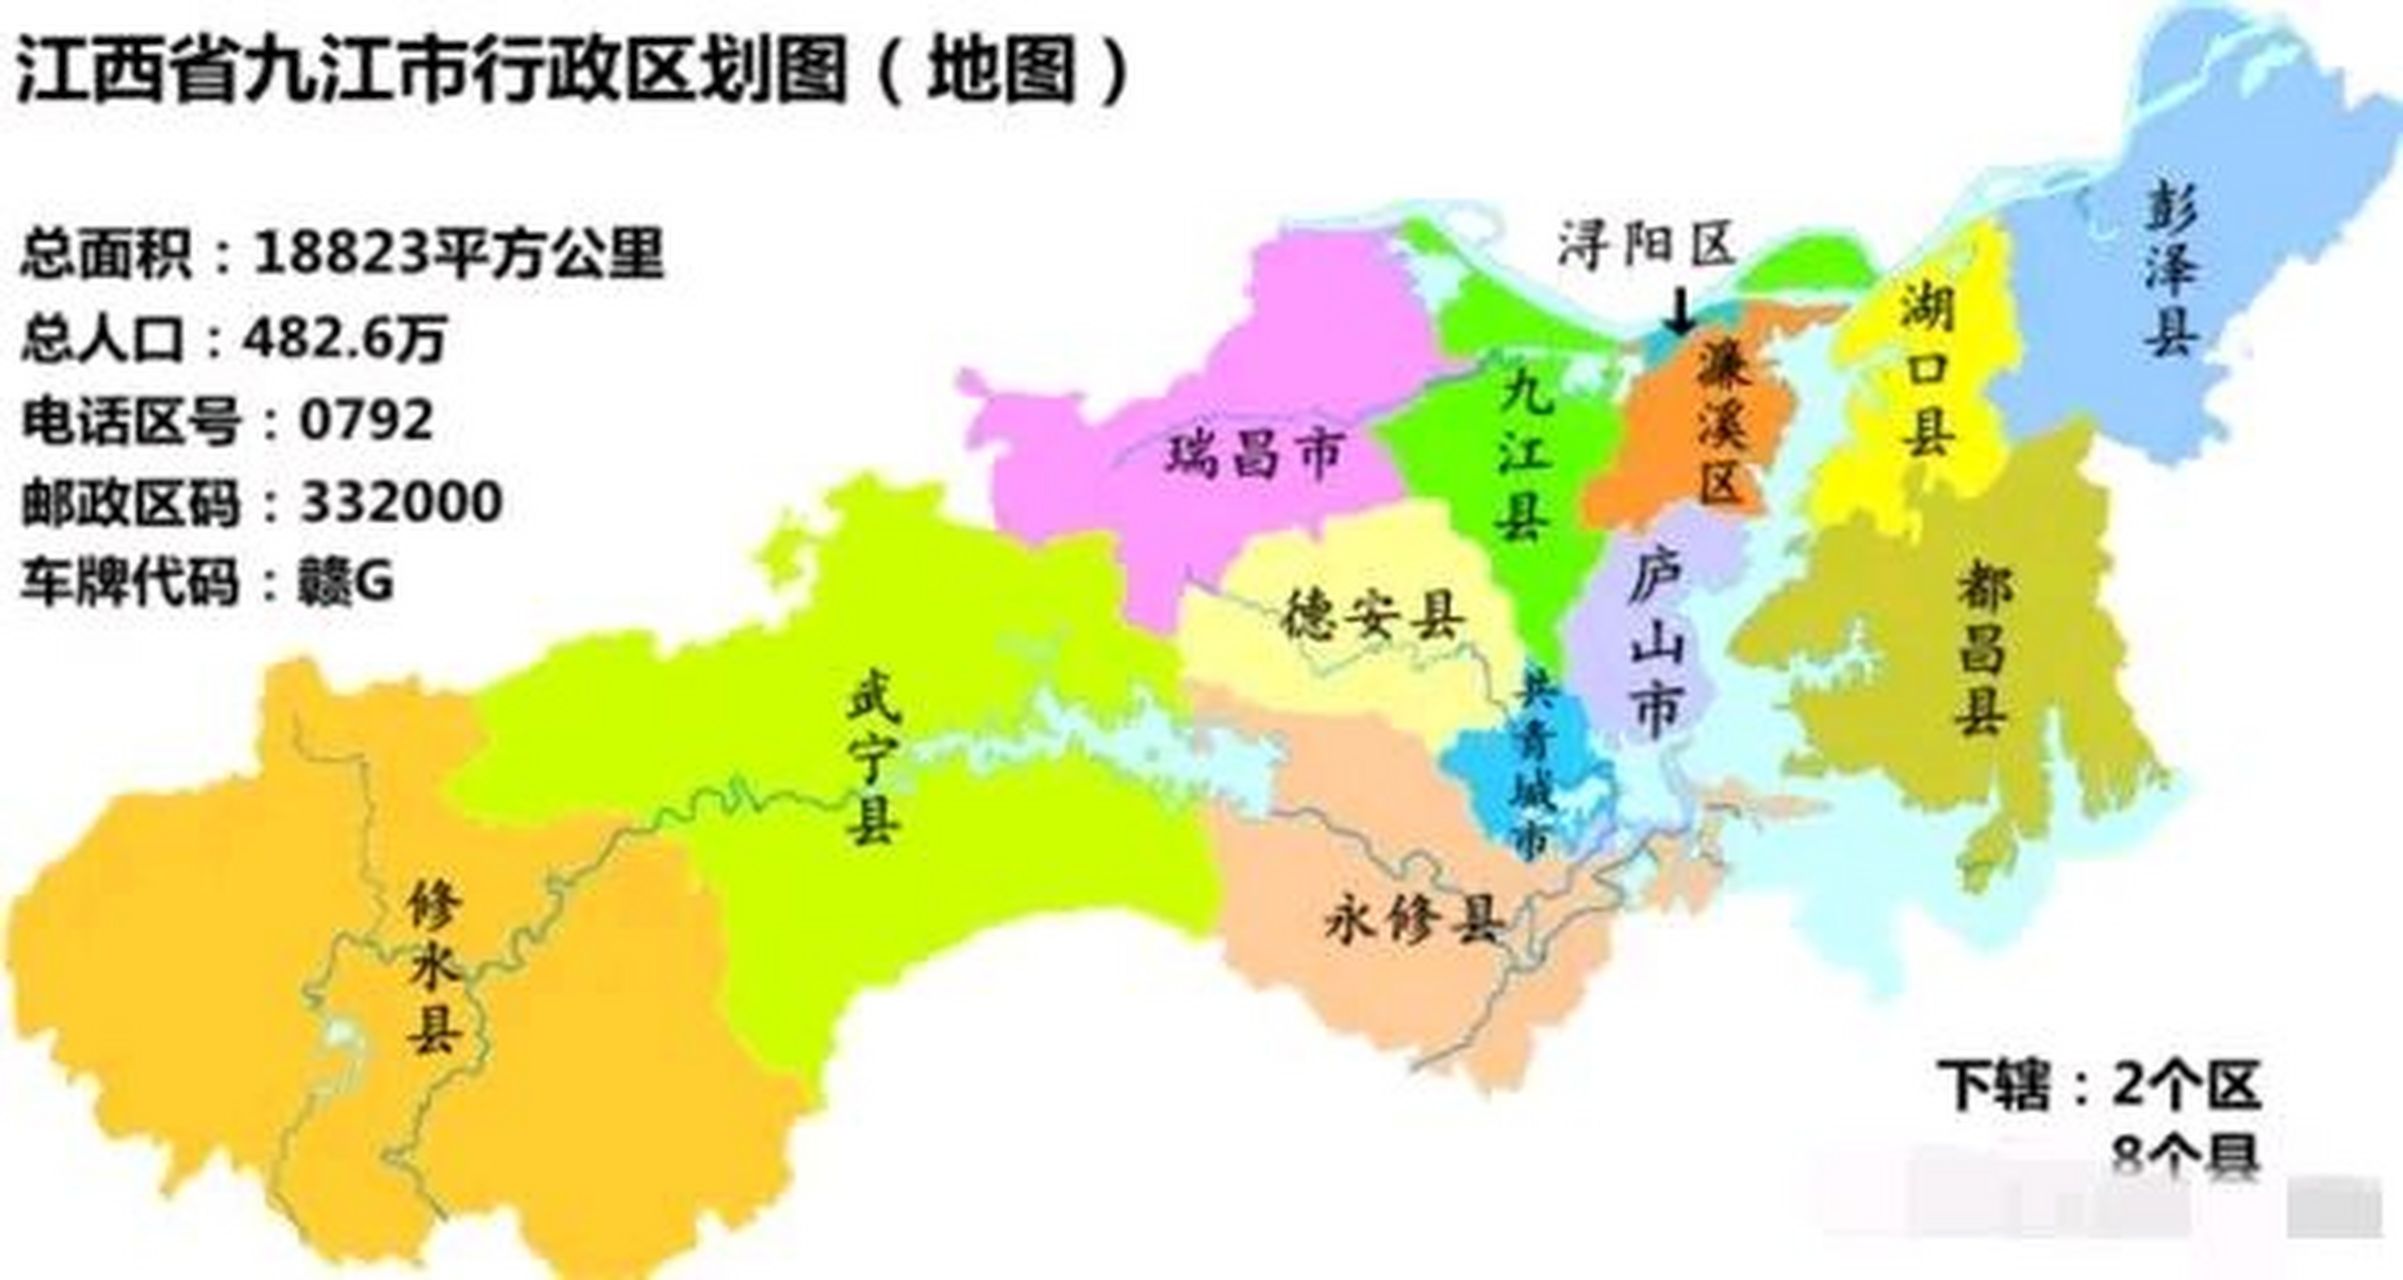 九江市的地理位置太优越了